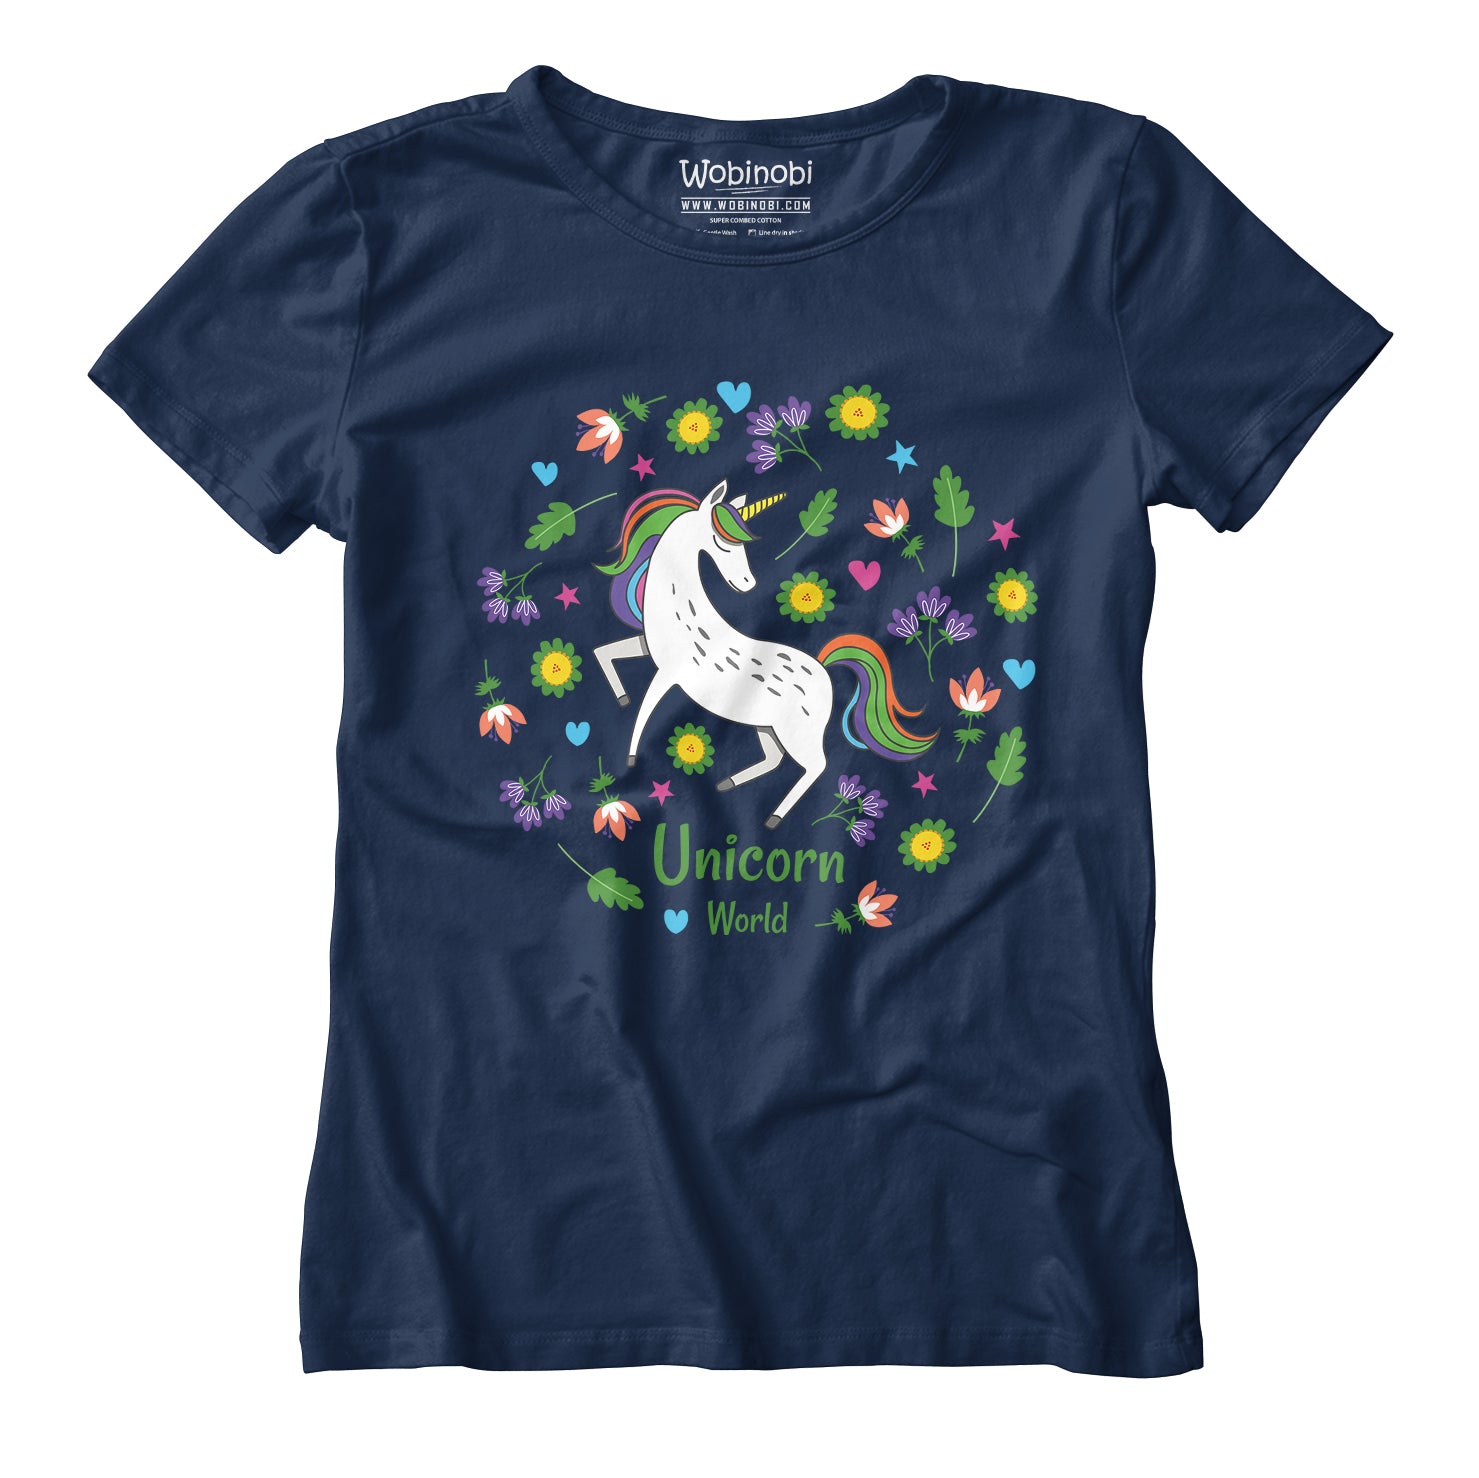 100% Unicorn Wobinobi T-Shirt World – Girls Cotton